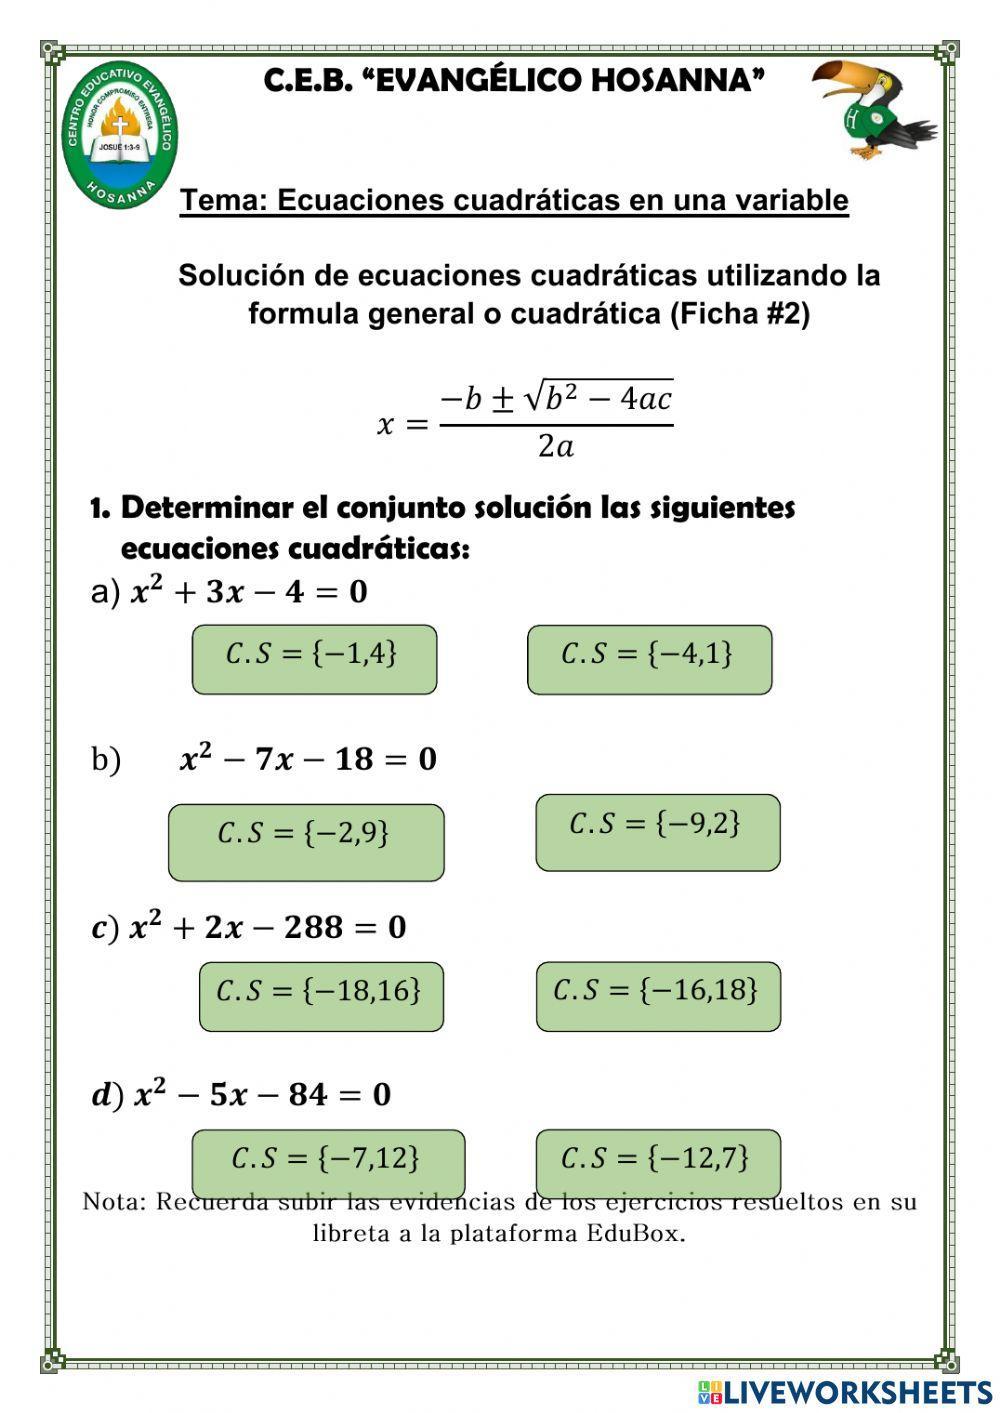 Ecuaciones cuadráticas con la formula general(ficha 2)